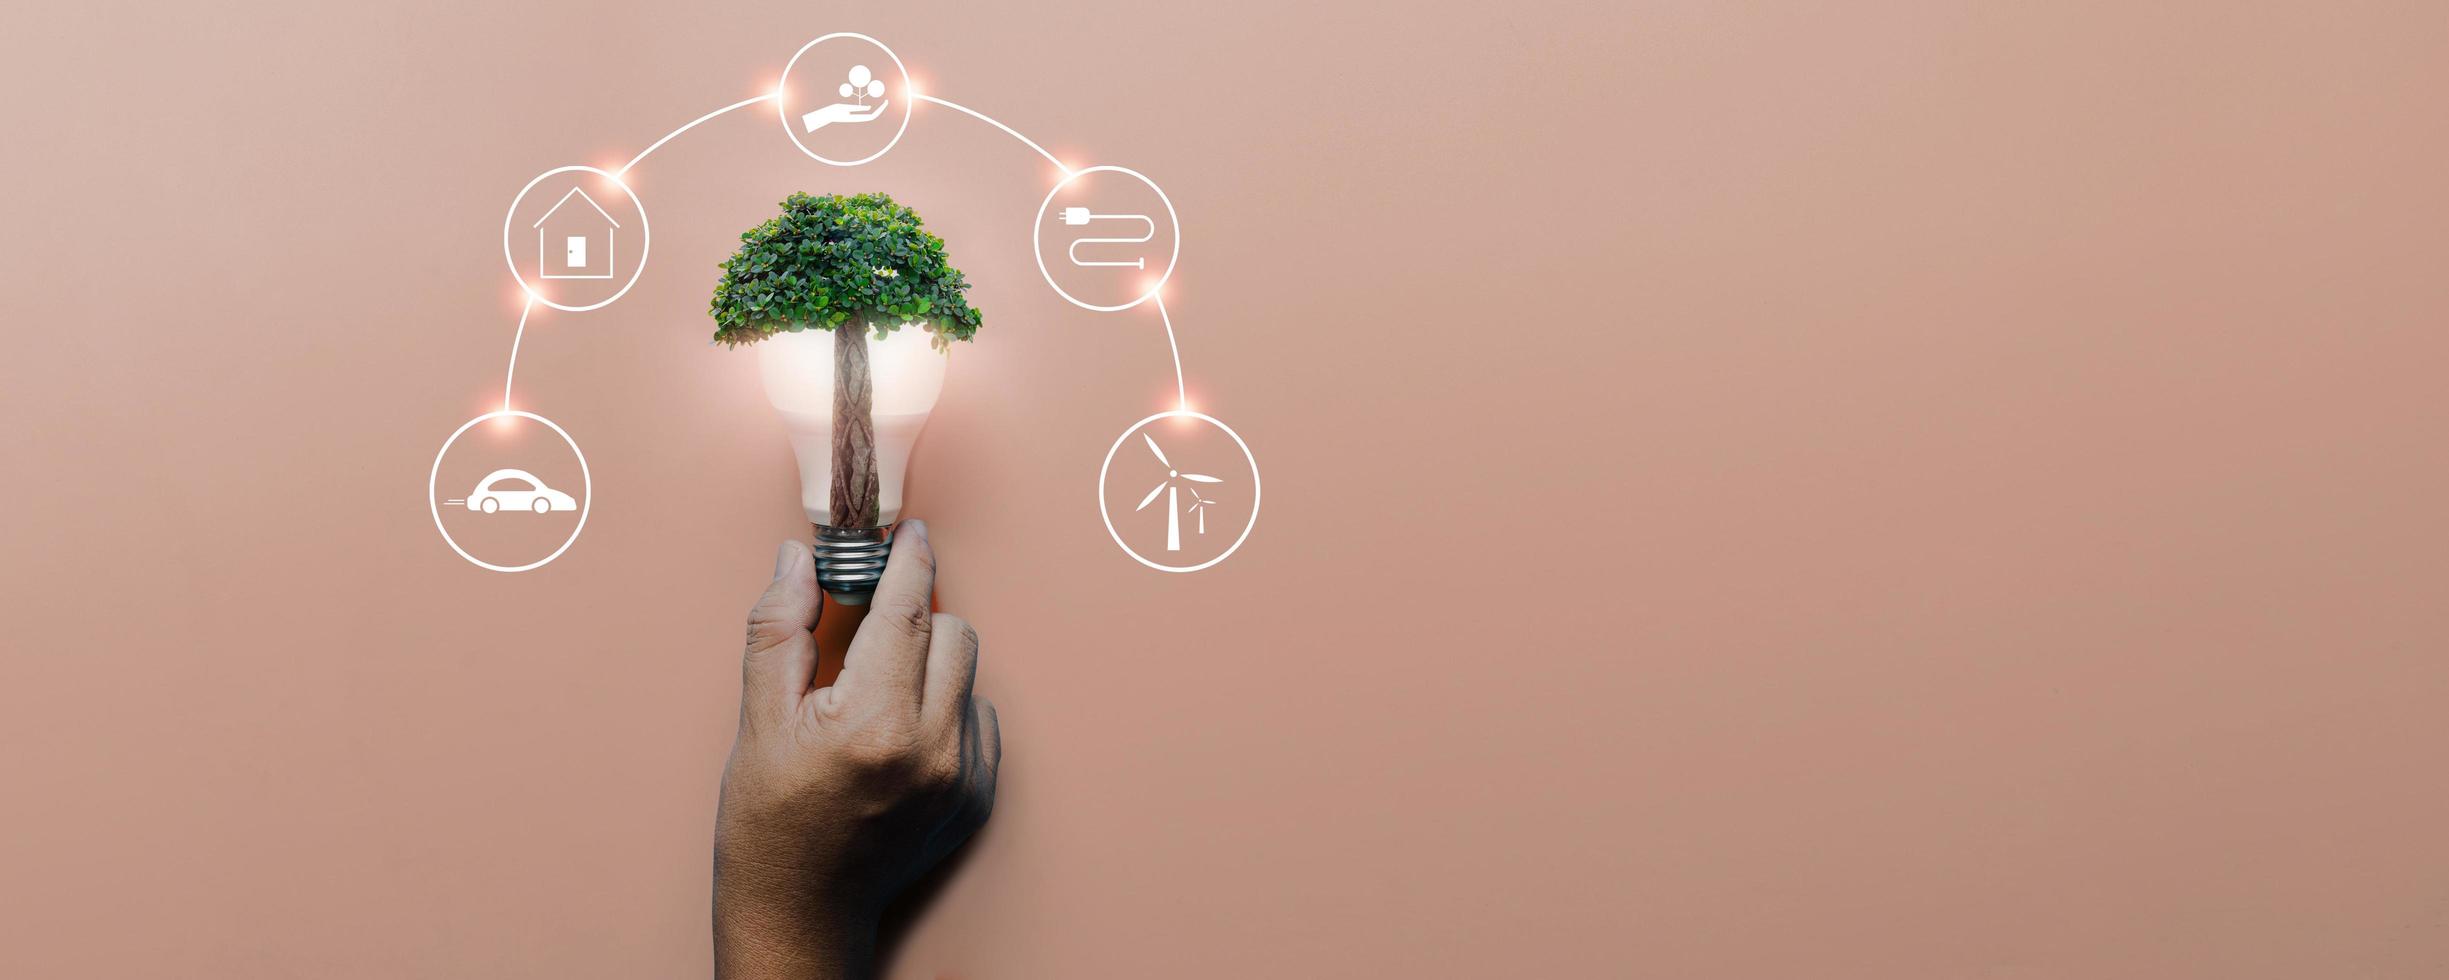 mão segurando uma lâmpada com uma grande árvore no fundo rosa com fontes de energia de ícones para energias renováveis, células solares, desenvolvimento sustentável. conceito de ecologia e meio ambiente. foto